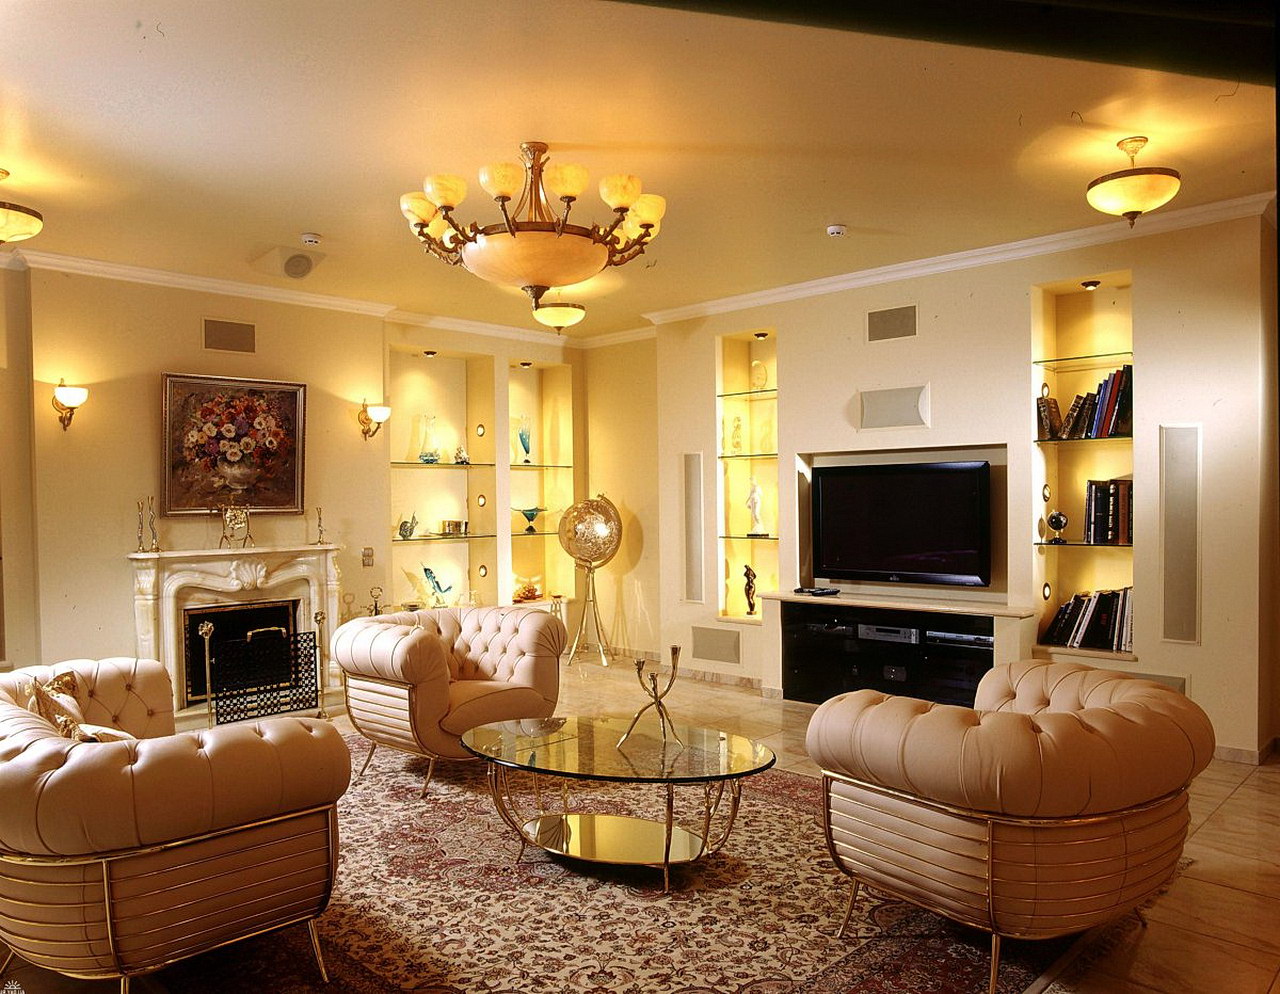 Lighting Living Room Ideas - Room Living Lighting Led Inspired Classy ...